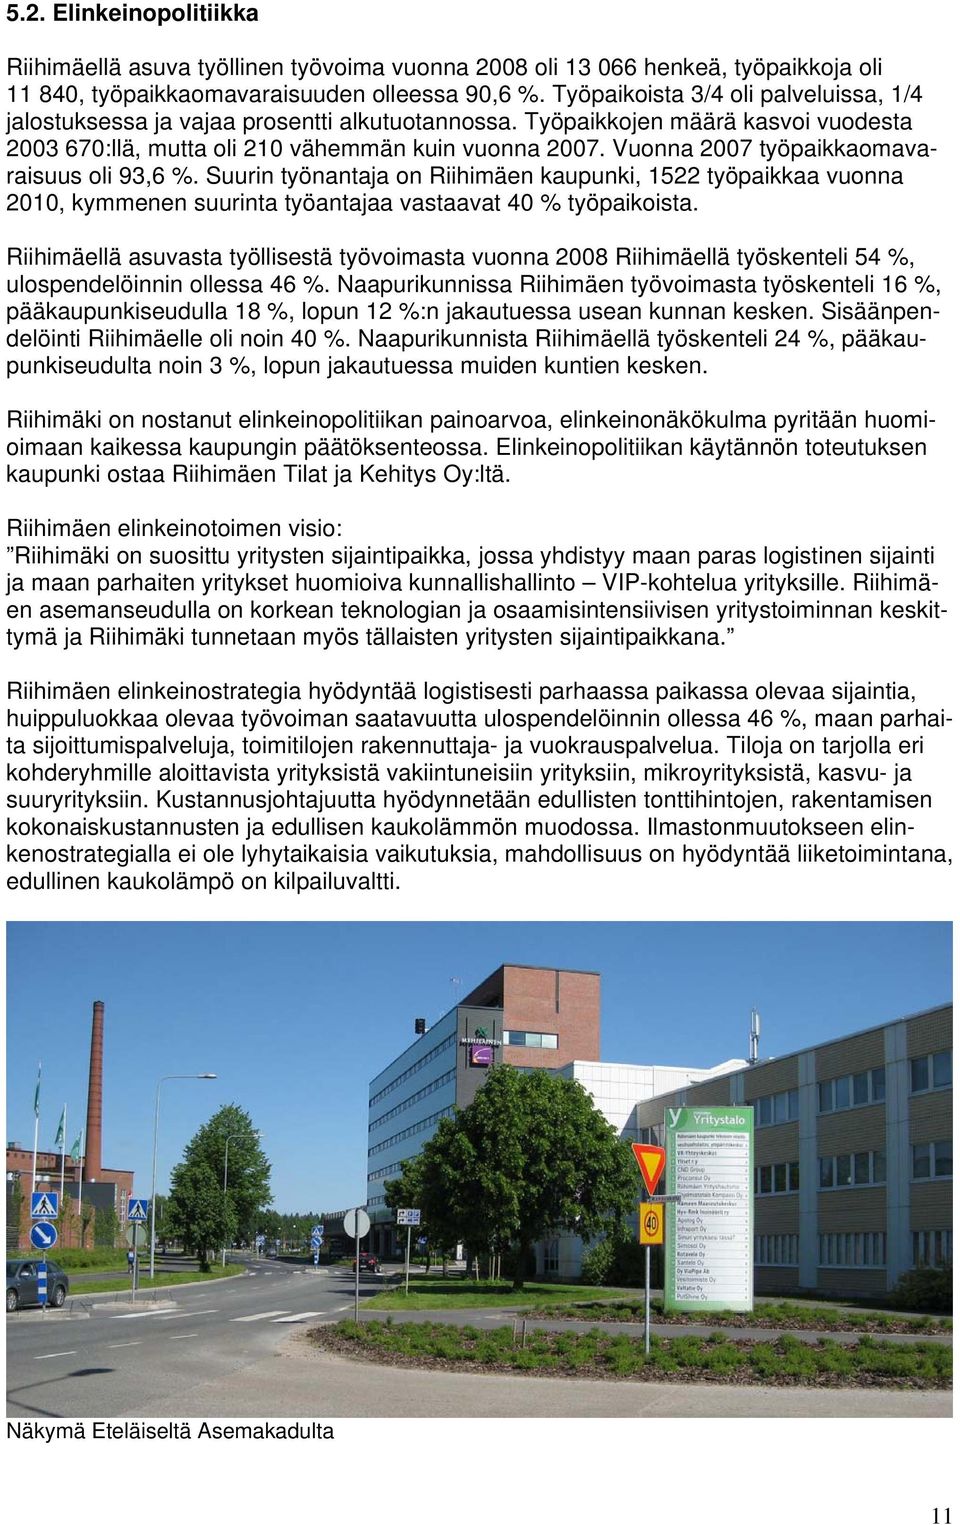 Vuonna 2007 työpaikkaomavaraisuus oli 93,6 %. Suurin työnantaja on Riihimäen kaupunki, 1522 työpaikkaa vuonna 2010, kymmenen suurinta työantajaa vastaavat 40 % työpaikoista.